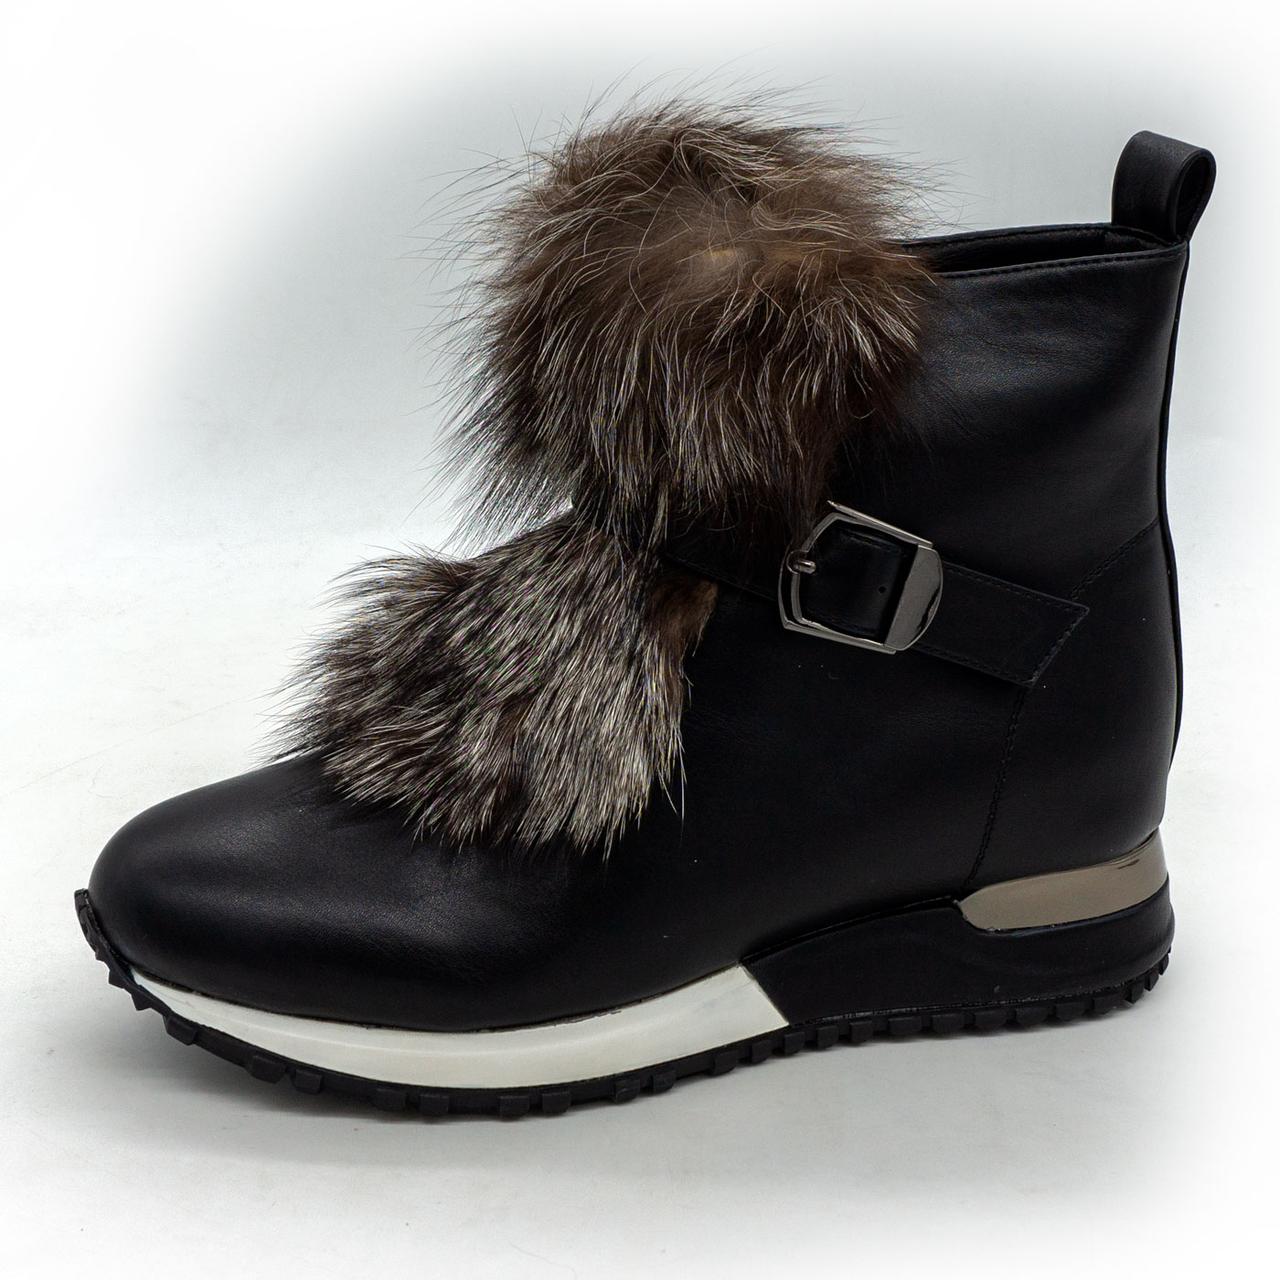 Зимові високі чорні шкіряні кросівки LICCI 826-H450M 36. Розміри в наявності: 36, 38, 40.